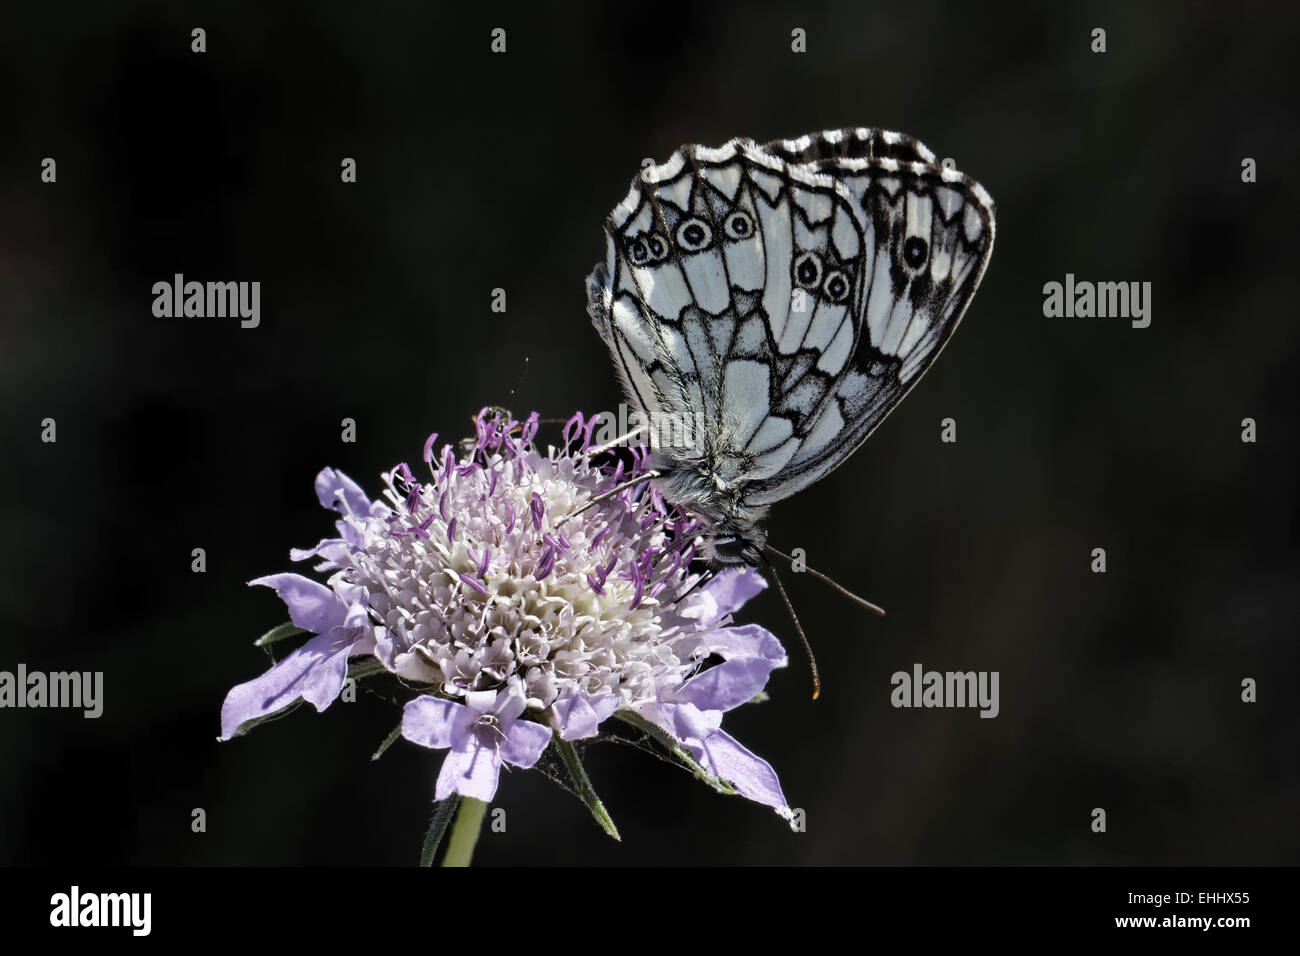 Melanargia galathea, Marbled White butterfly Stock Photo